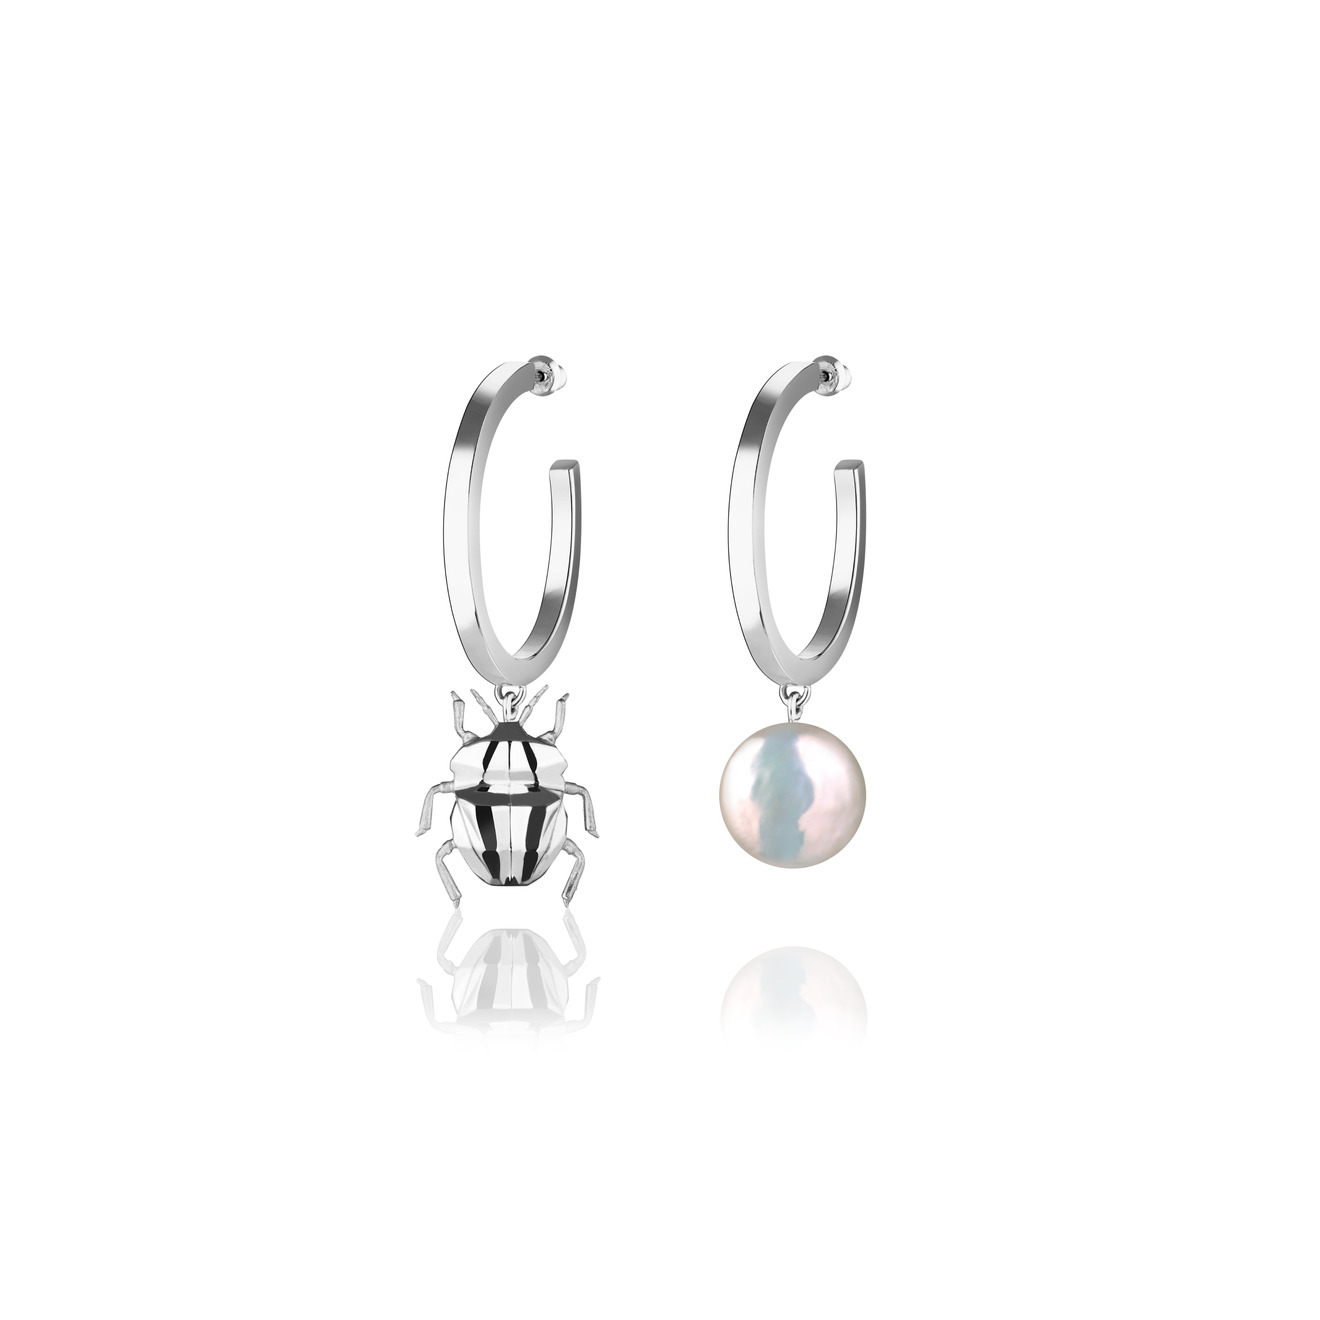 Vertigo Jewellery Lab Асимметричные серьги из серебра BUG с жемчугом vertigo jewellery lab кольцо сleoptr ladybug ring из серебра с речным жемчугом